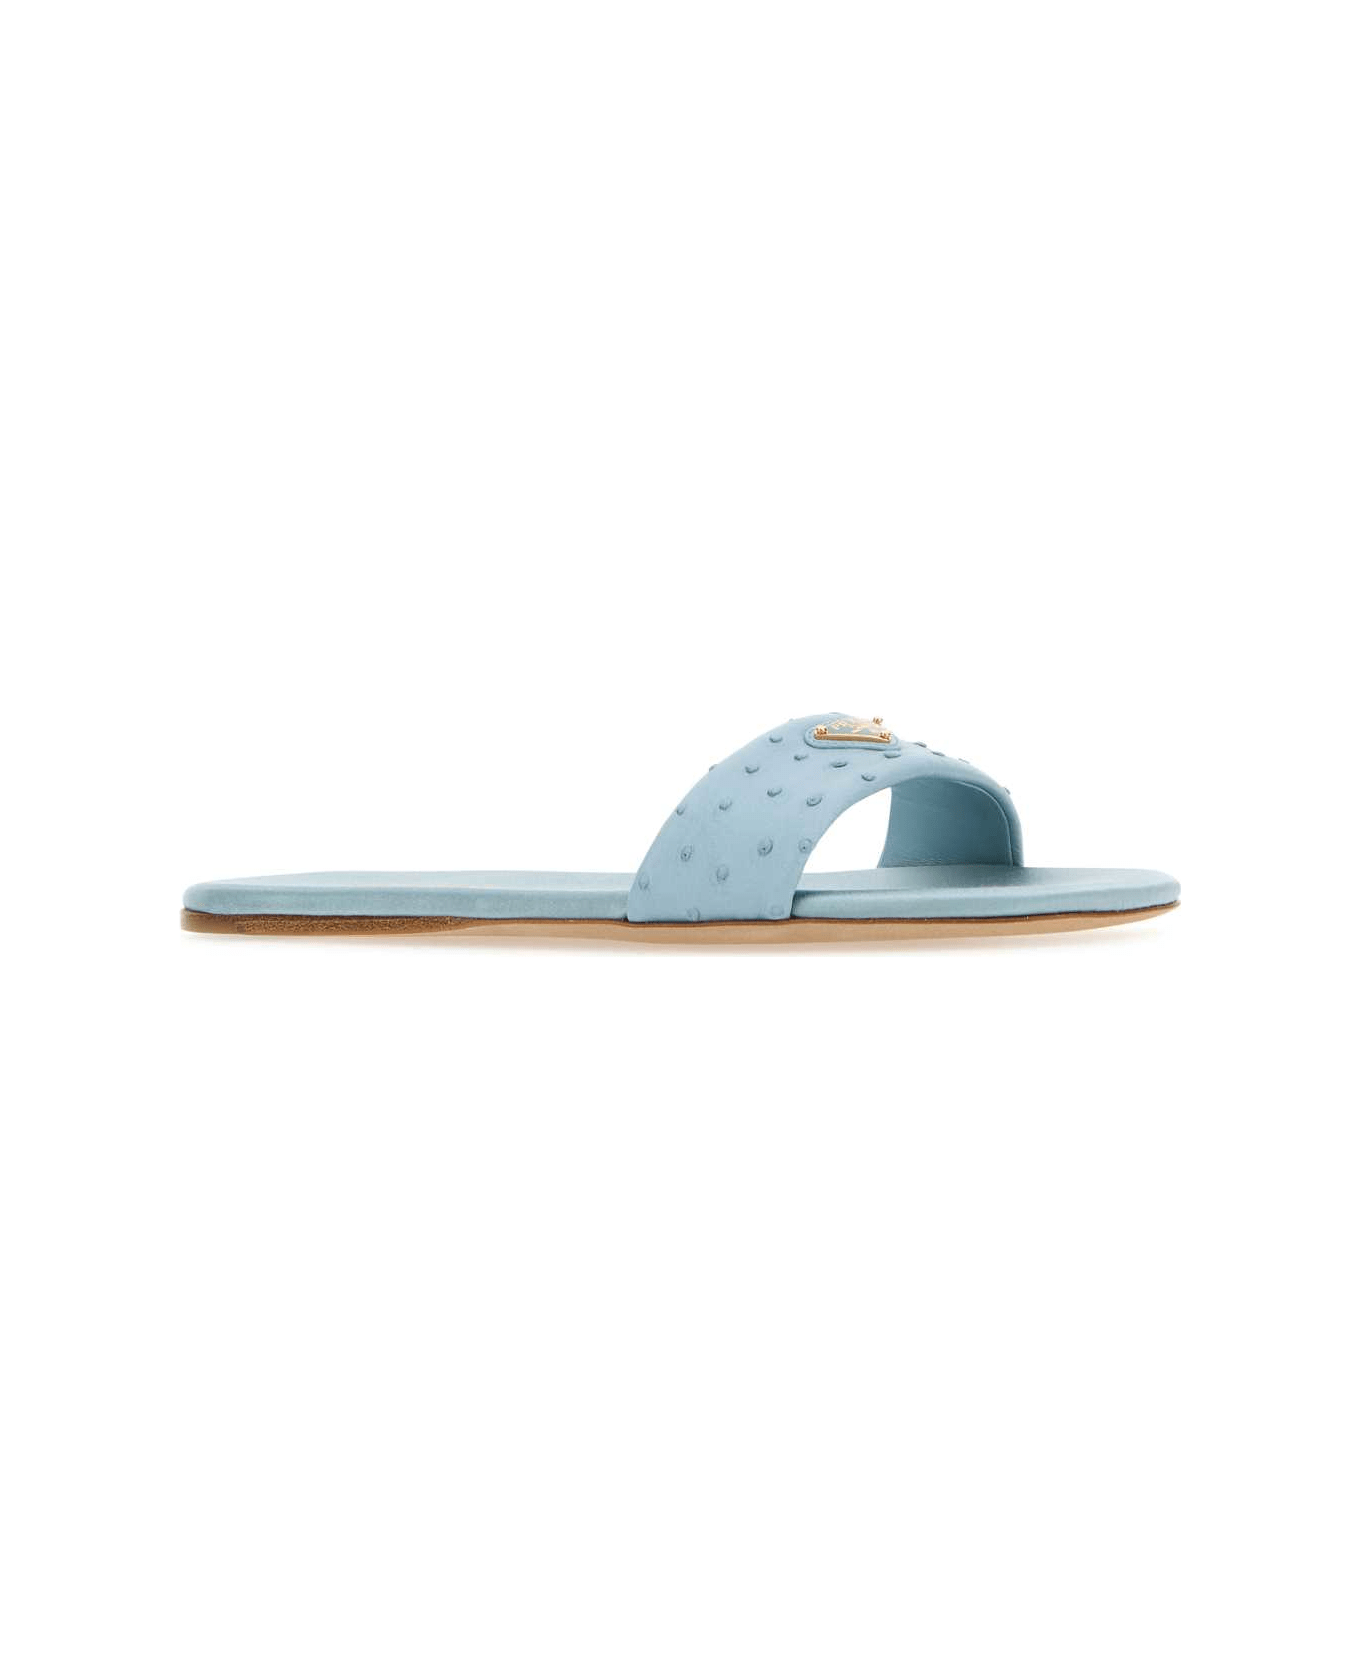 Prada Light Blue Leather Slippers - CELESTE サンダル